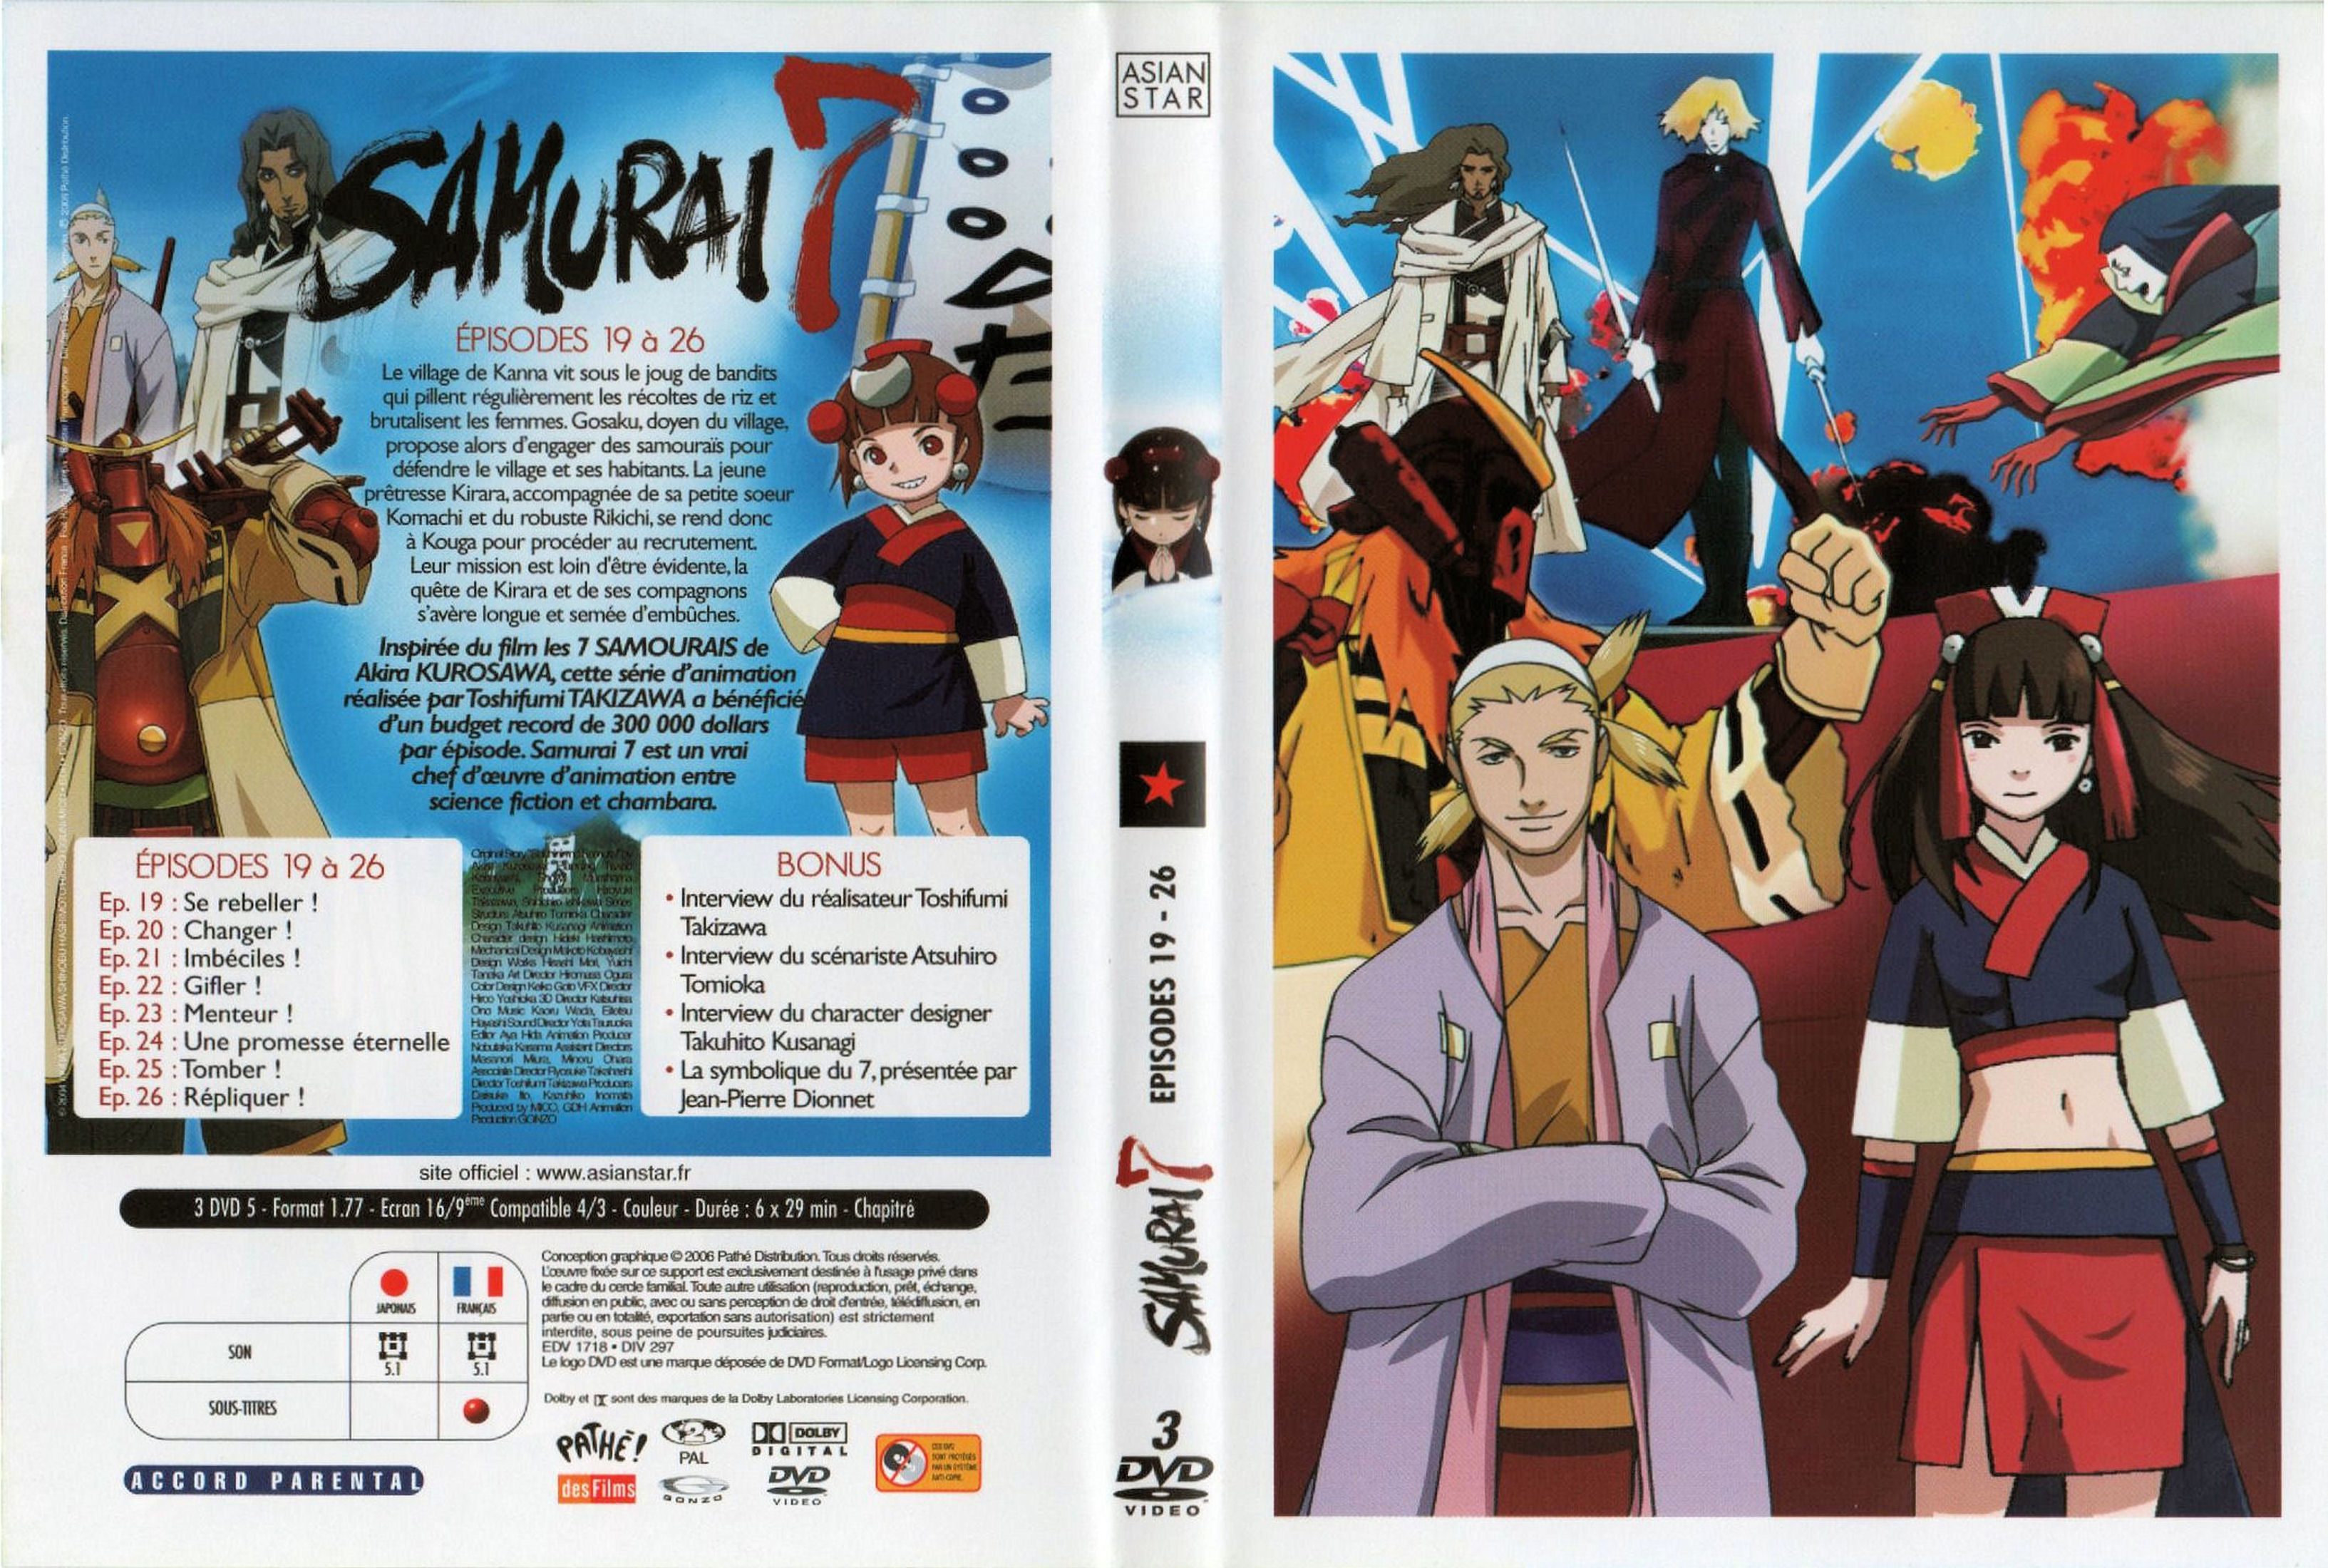 Jaquette DVD Samurai 7 vol 04